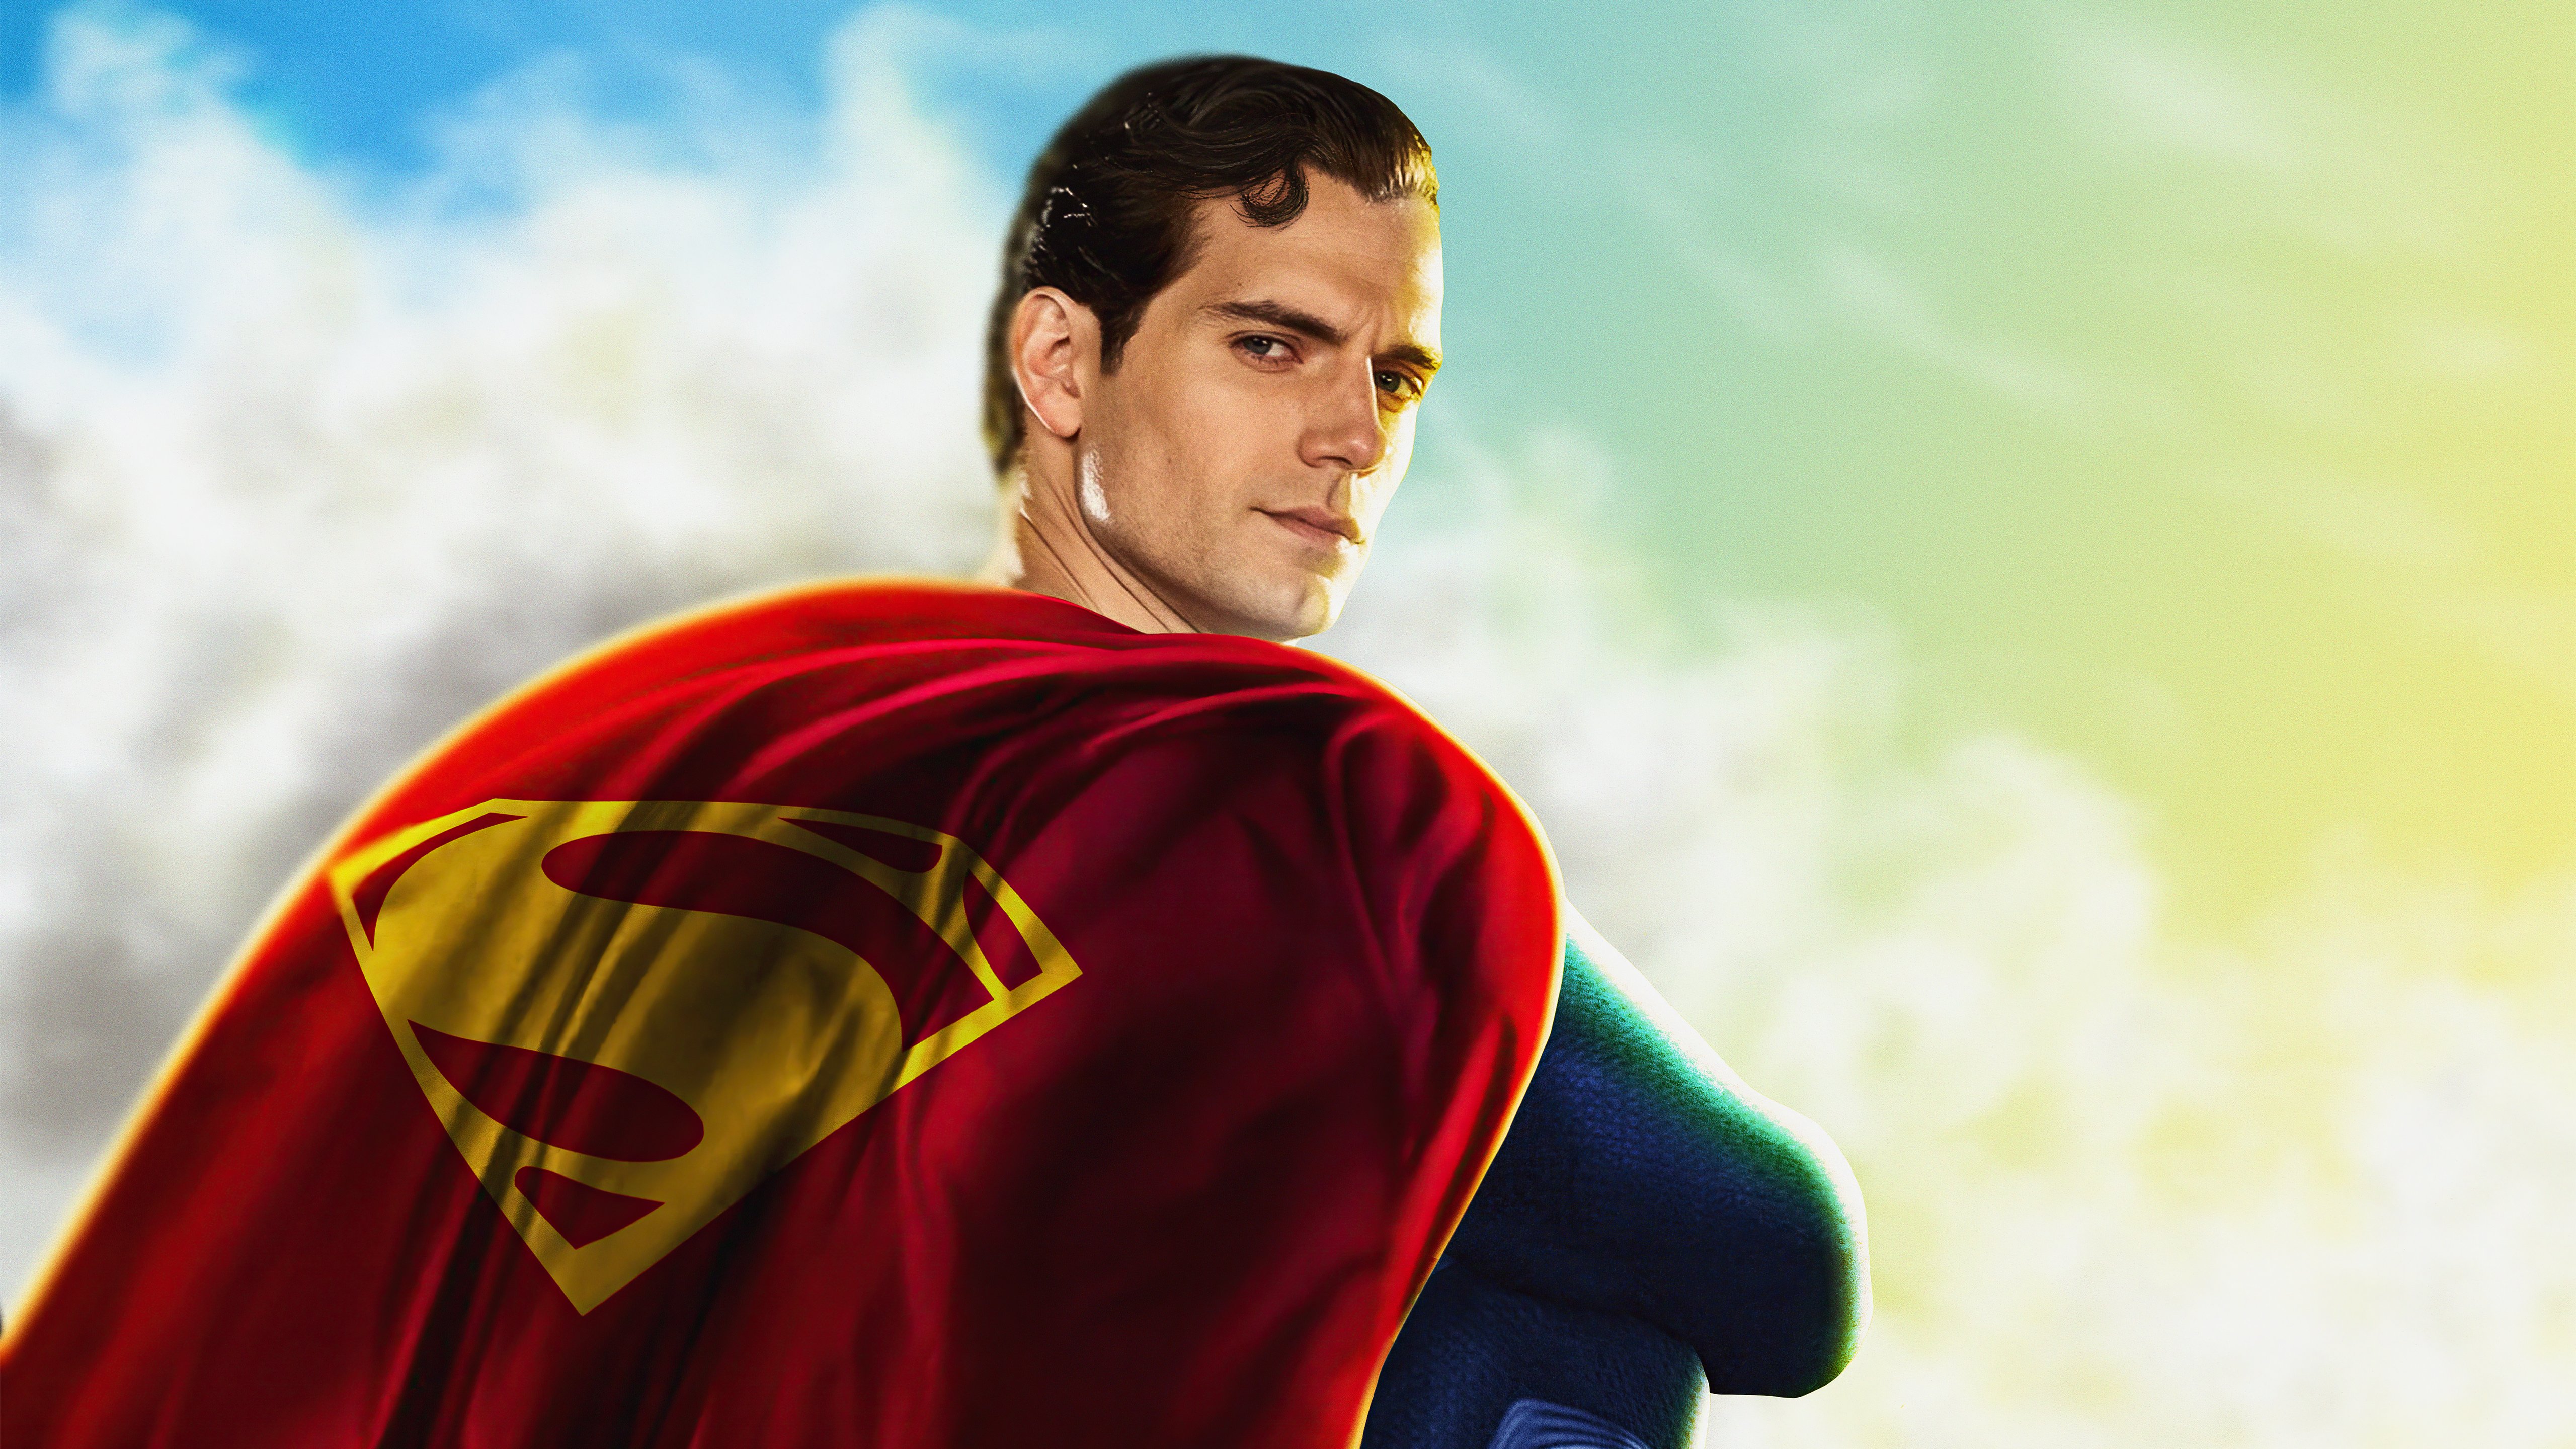 Henry Cavill Superman Wallpaper 5k Ultra HD ID:8659